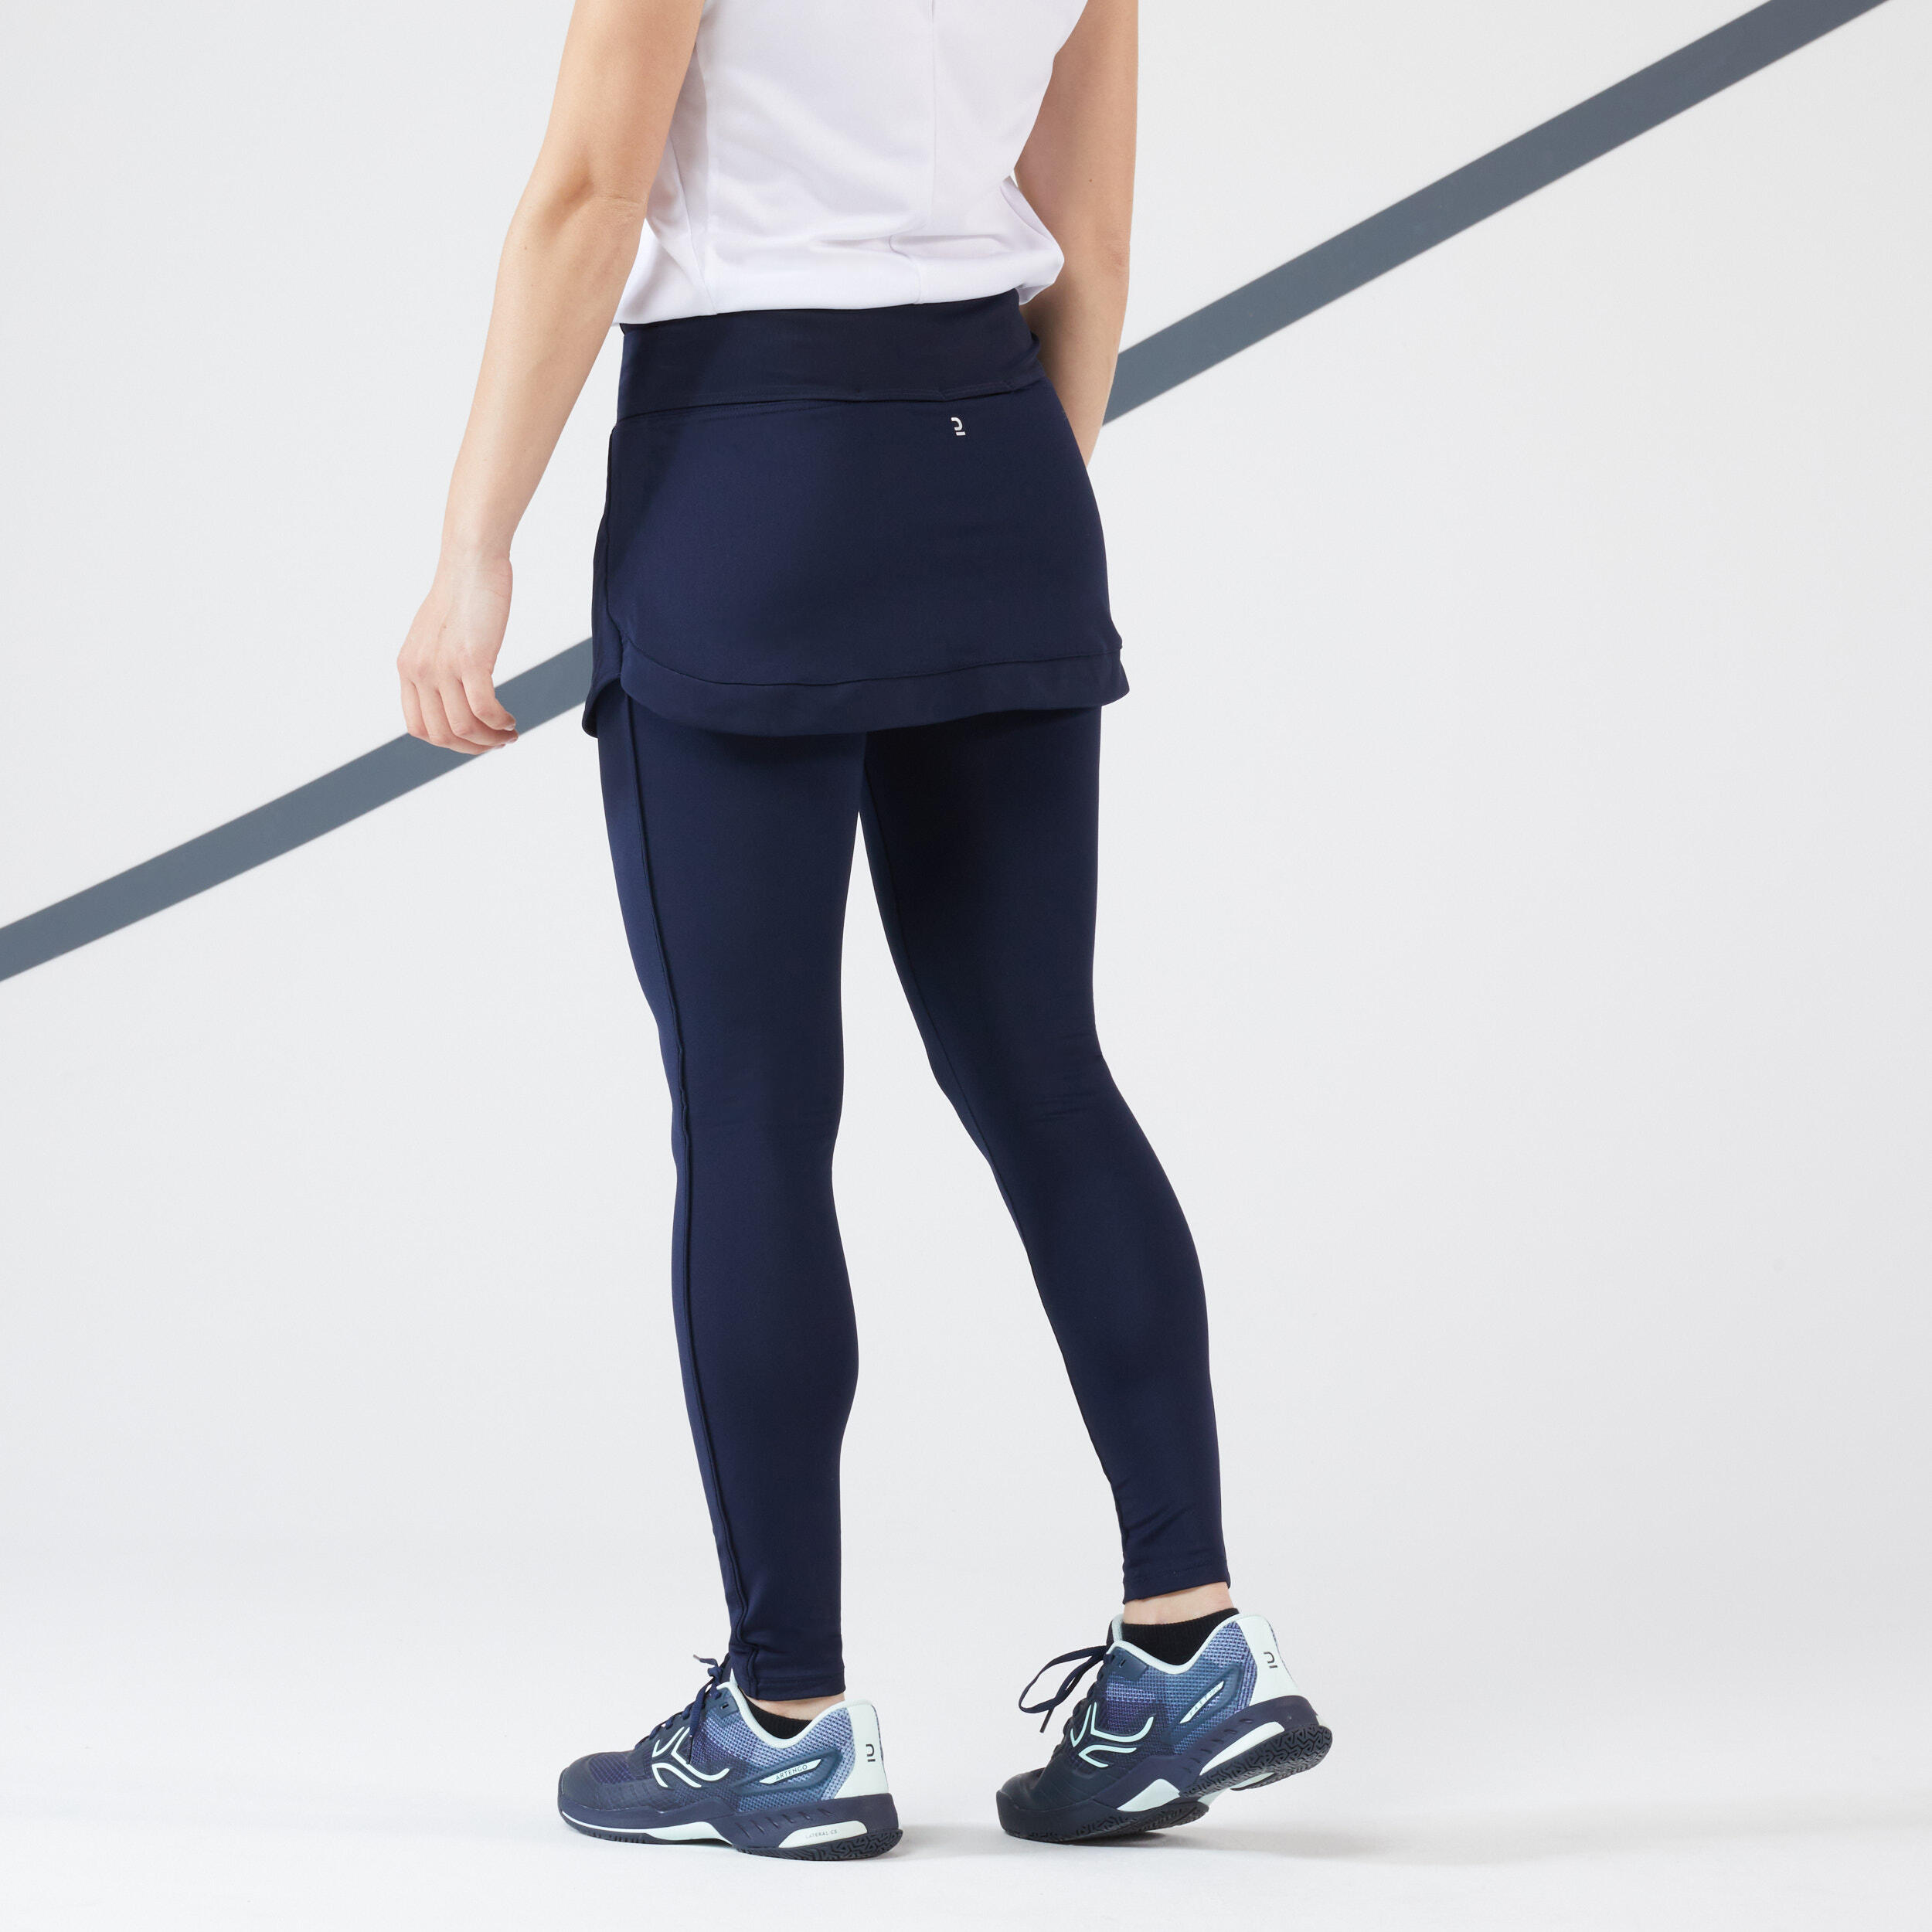 Women's Tennis Hip Ball Skirt + Leggings Dry - Blue/Black ARTENGO